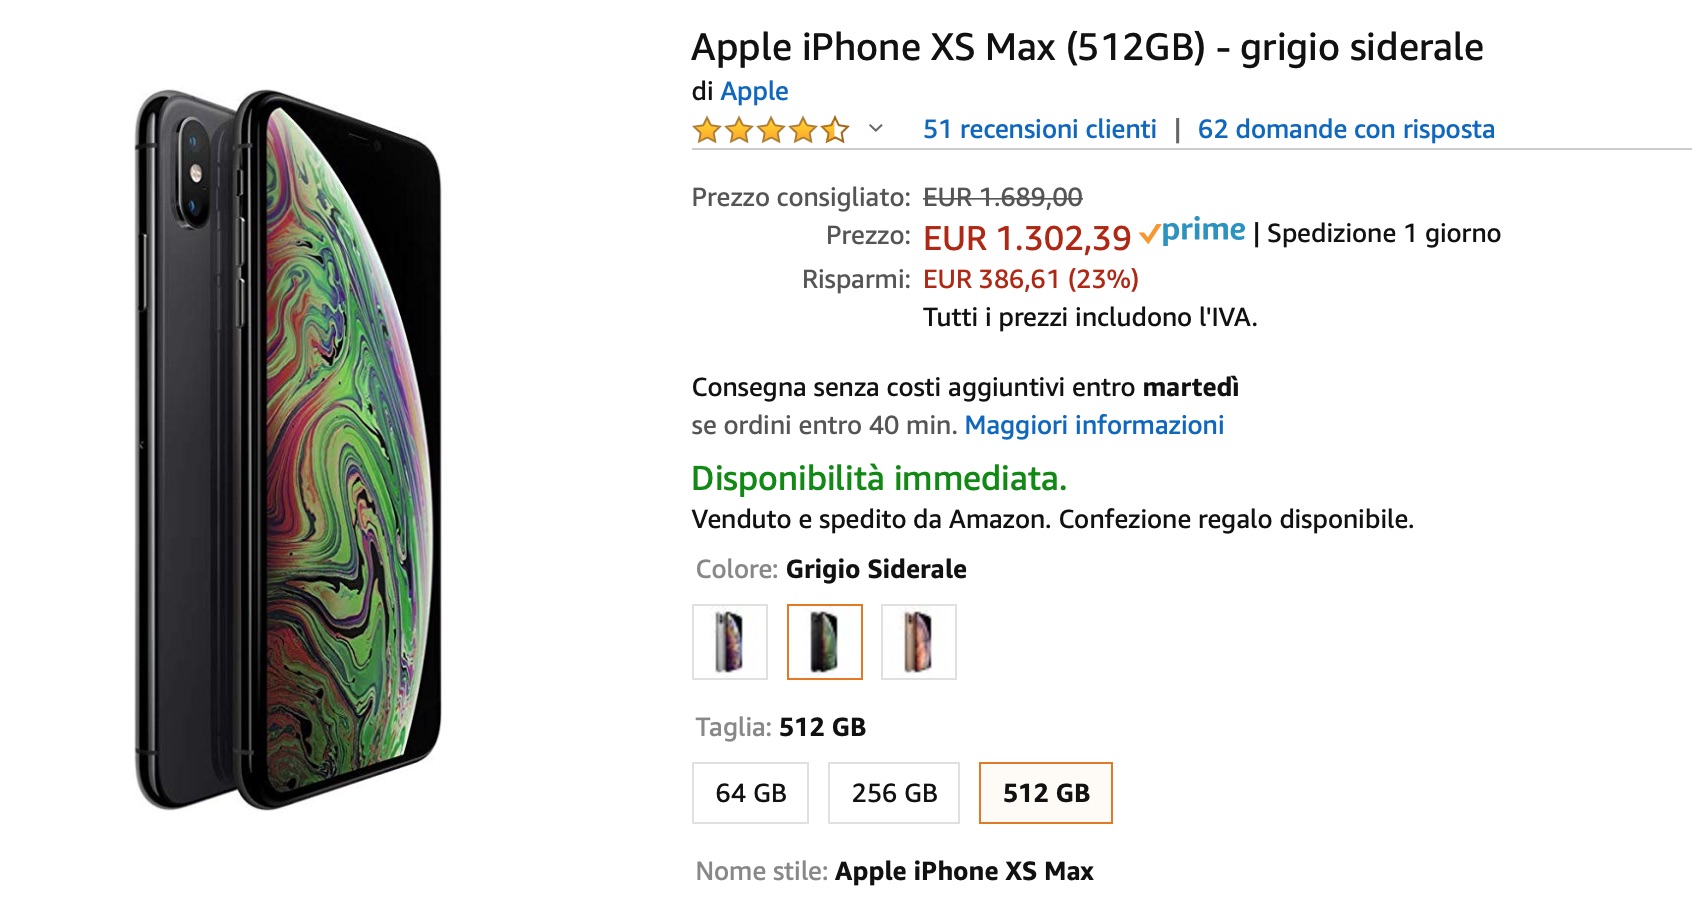 Sconti flash su Amazon: iPhone XS Max -23%, offerte su iPhone XS, iPhone X e iPhone 8 Plus